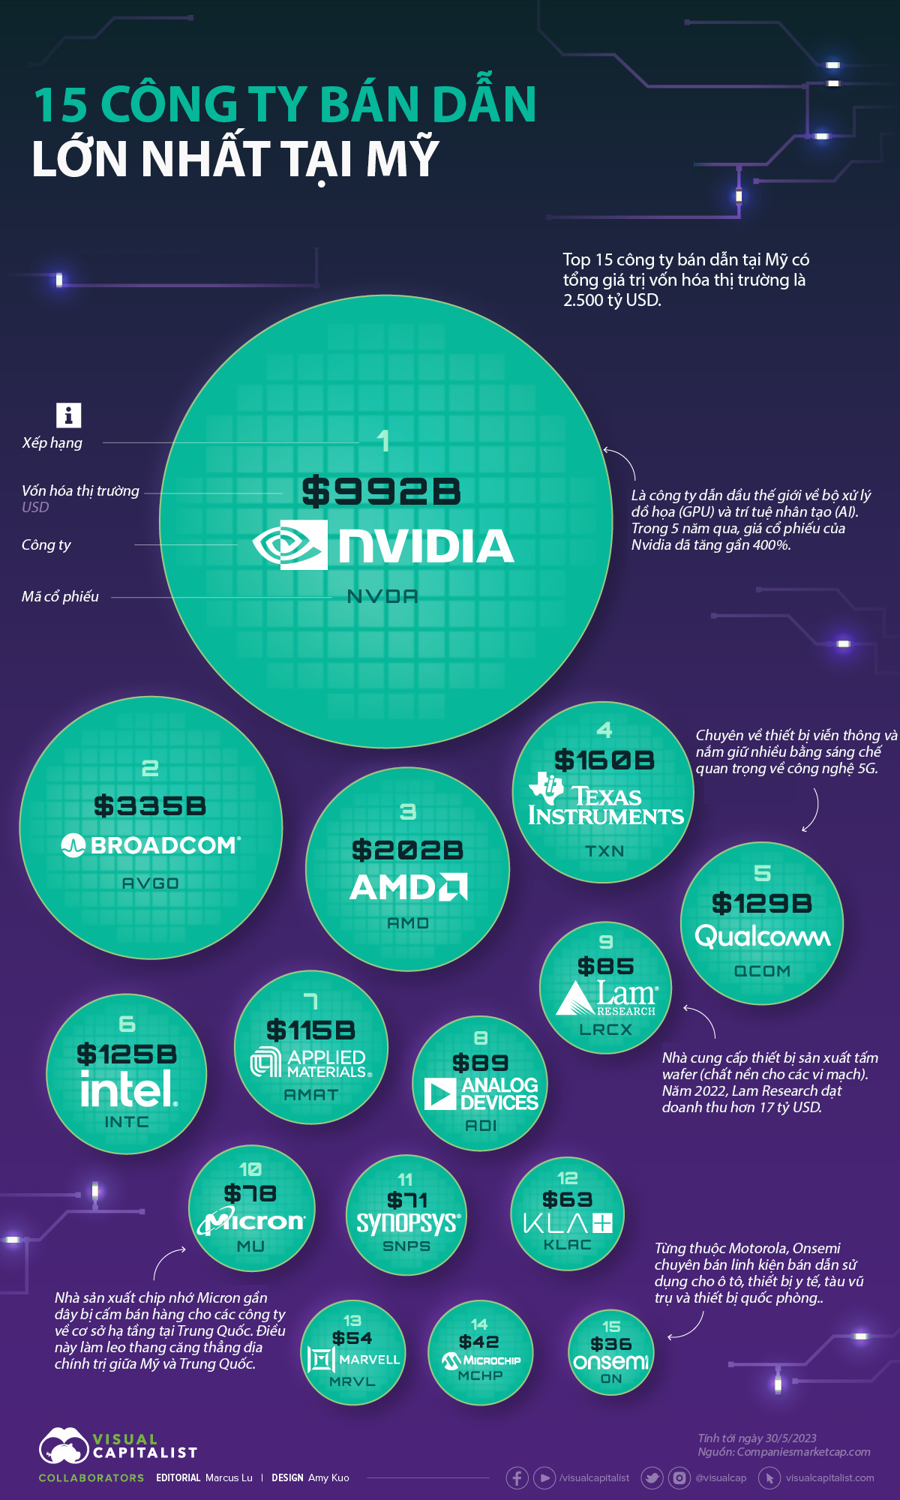 15 công ty bán dẫn lớn nhất tại Mỹ, Nvidia đứng đầu - Ảnh 1